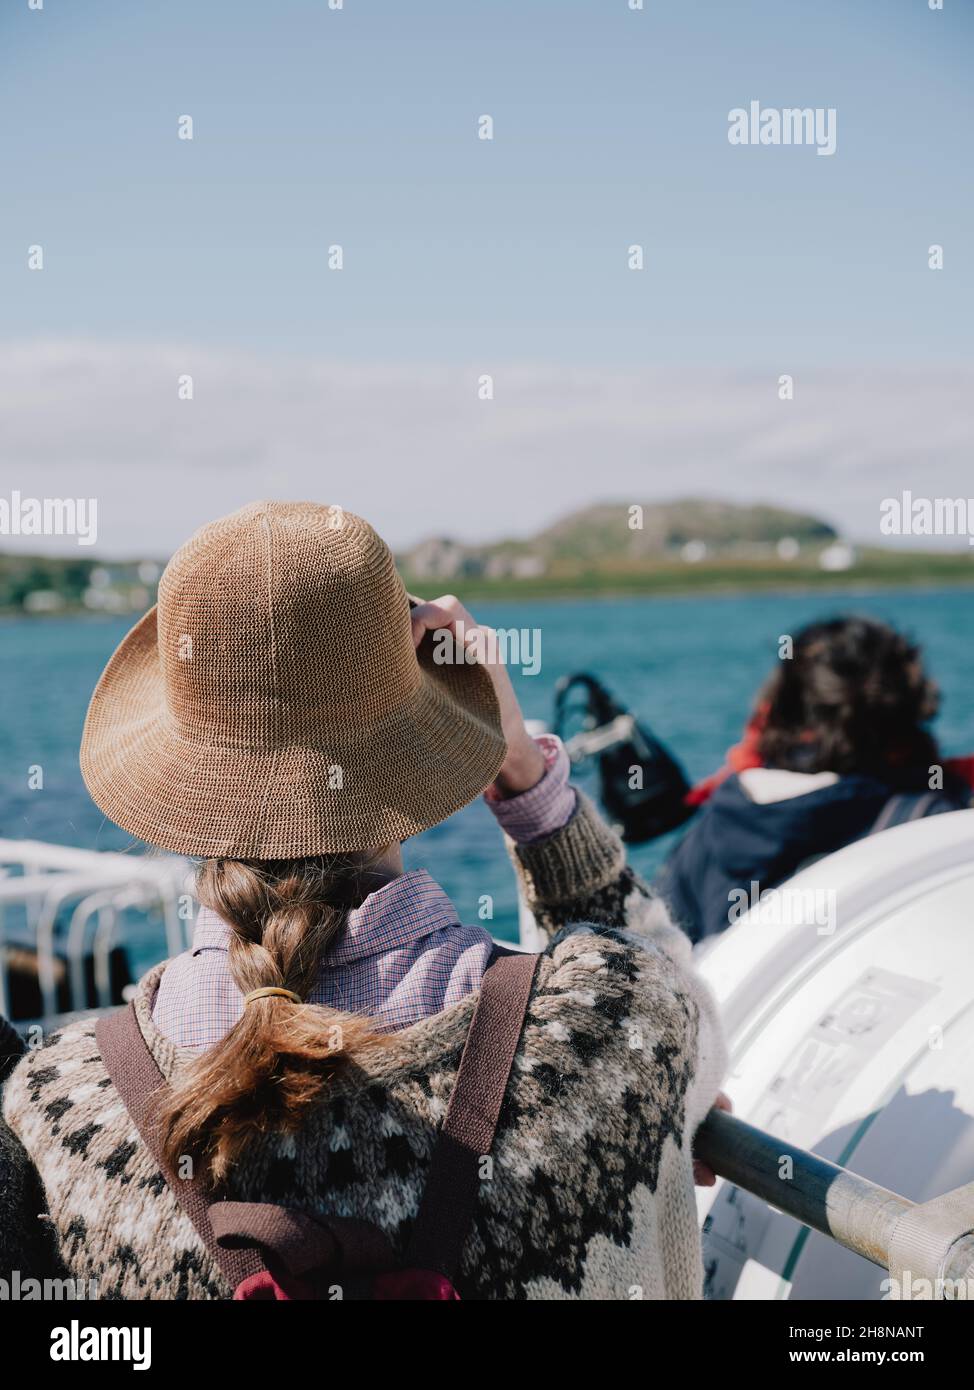 Visite des Hébrides intérieures en ferry de Calmac à l'île d'Iona de Fionnphort sur l'île de Mull Ecosse - Scottish Summer tourisme île hopping Banque D'Images